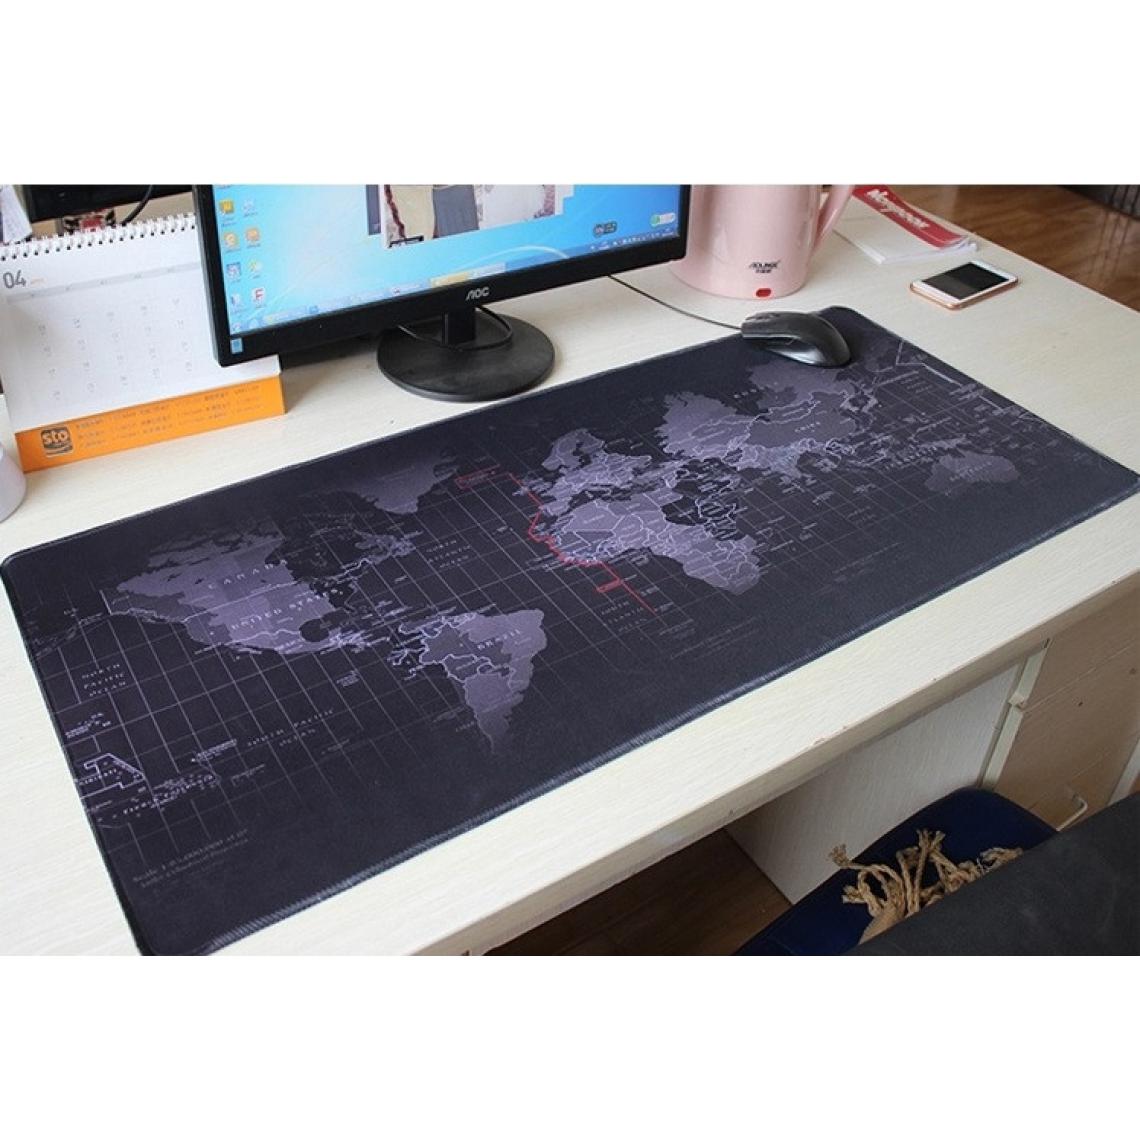 Shot - Tapis de Souris Monde pour PC PACKARD BELL Clavier Bureau Map Deperlant 40x90cm (NOIR) - Tapis de souris